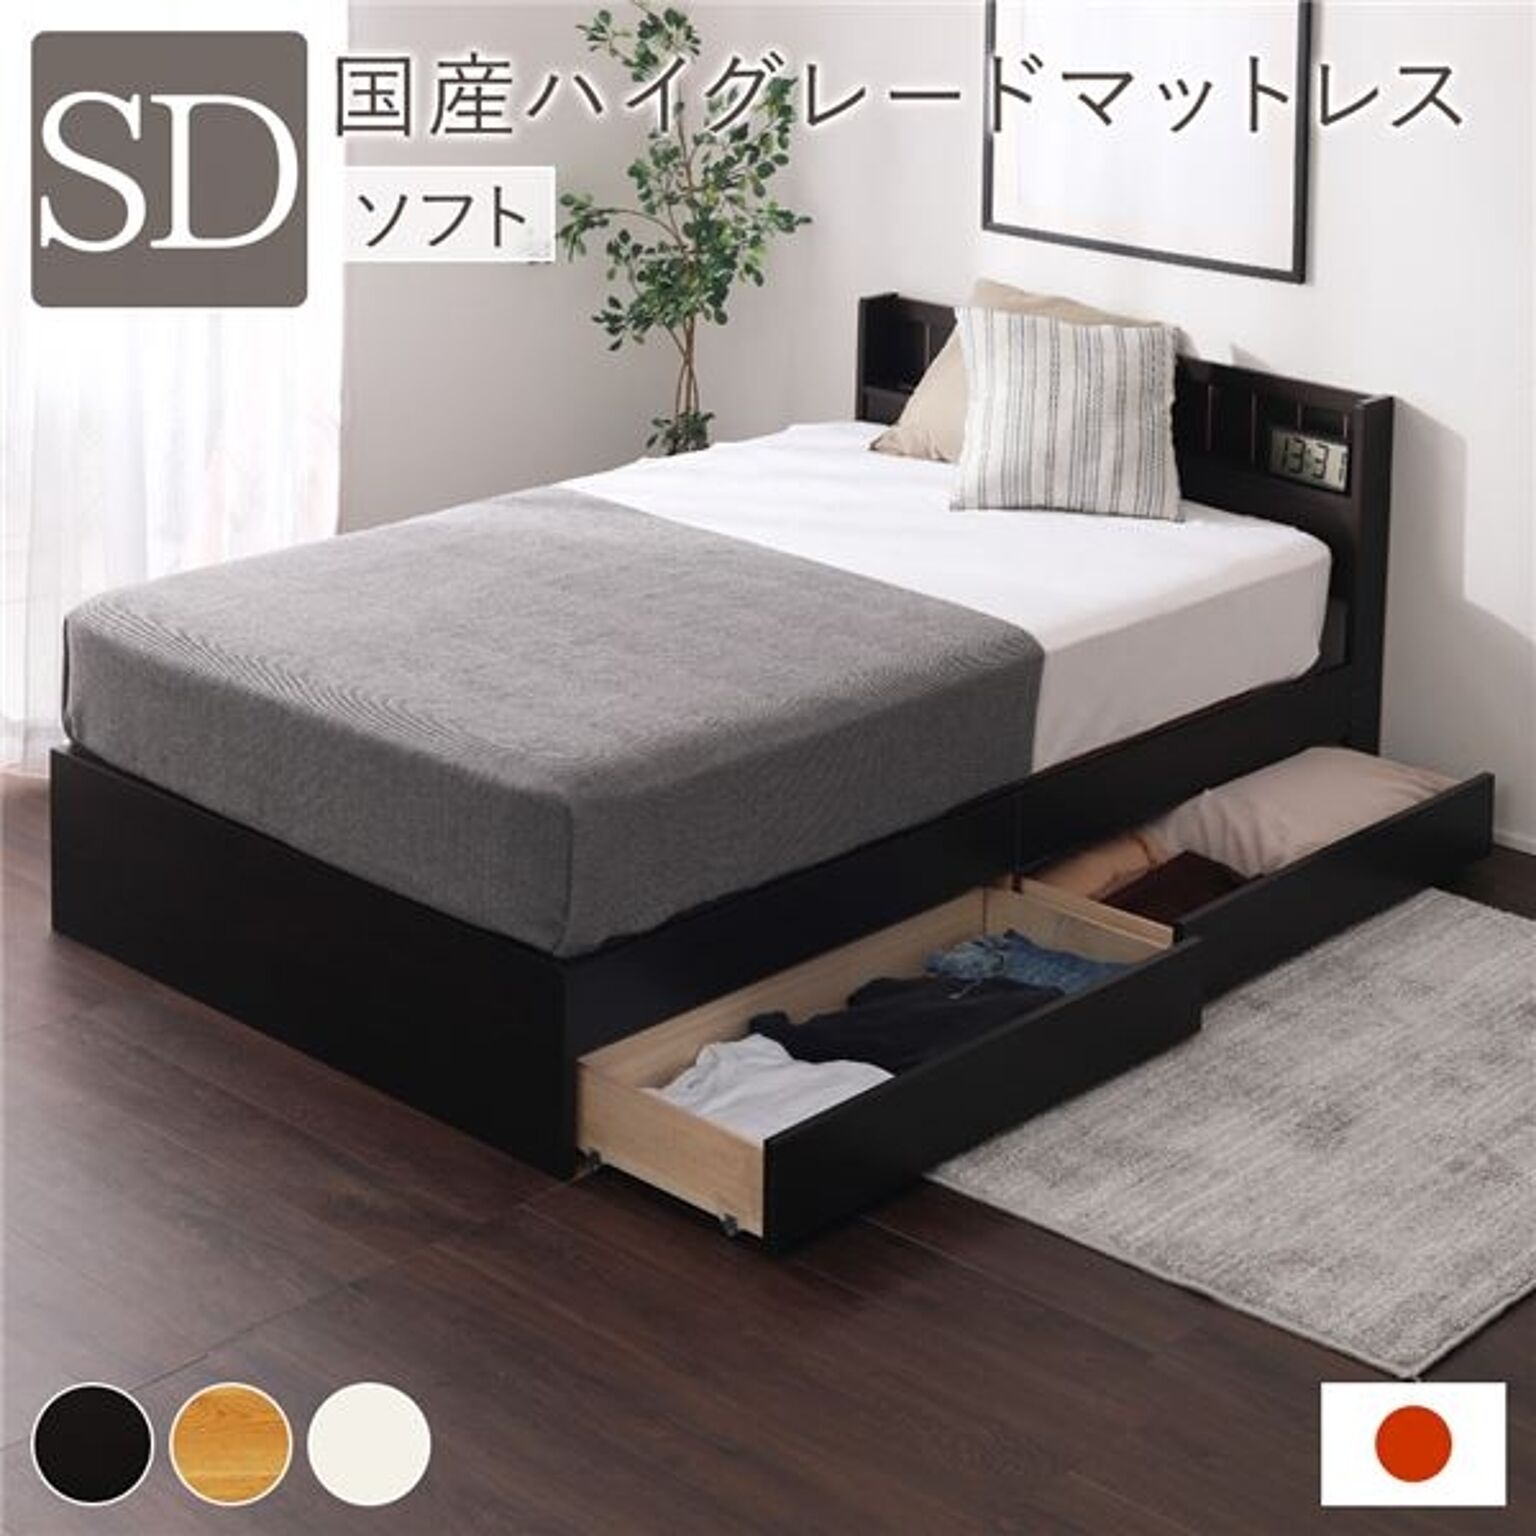 日本製 セミダブルベッド 収納付き ブラウン ポケットコイルマットレス